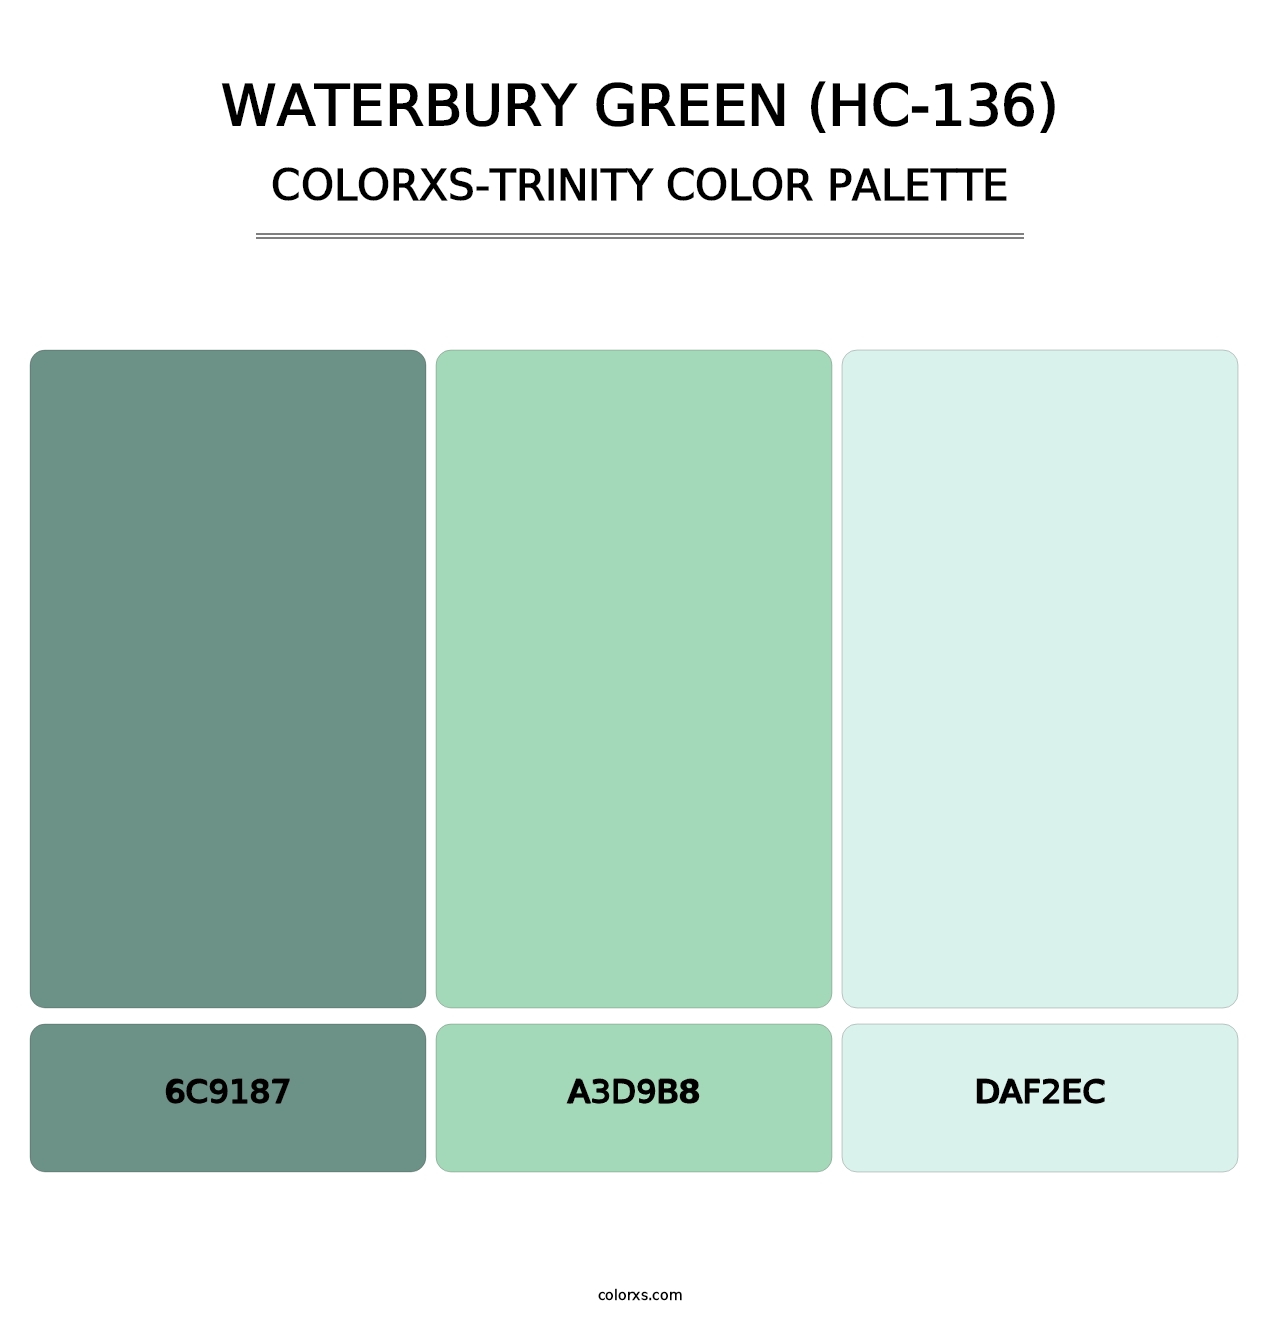 Waterbury Green (HC-136) - Colorxs Trinity Palette